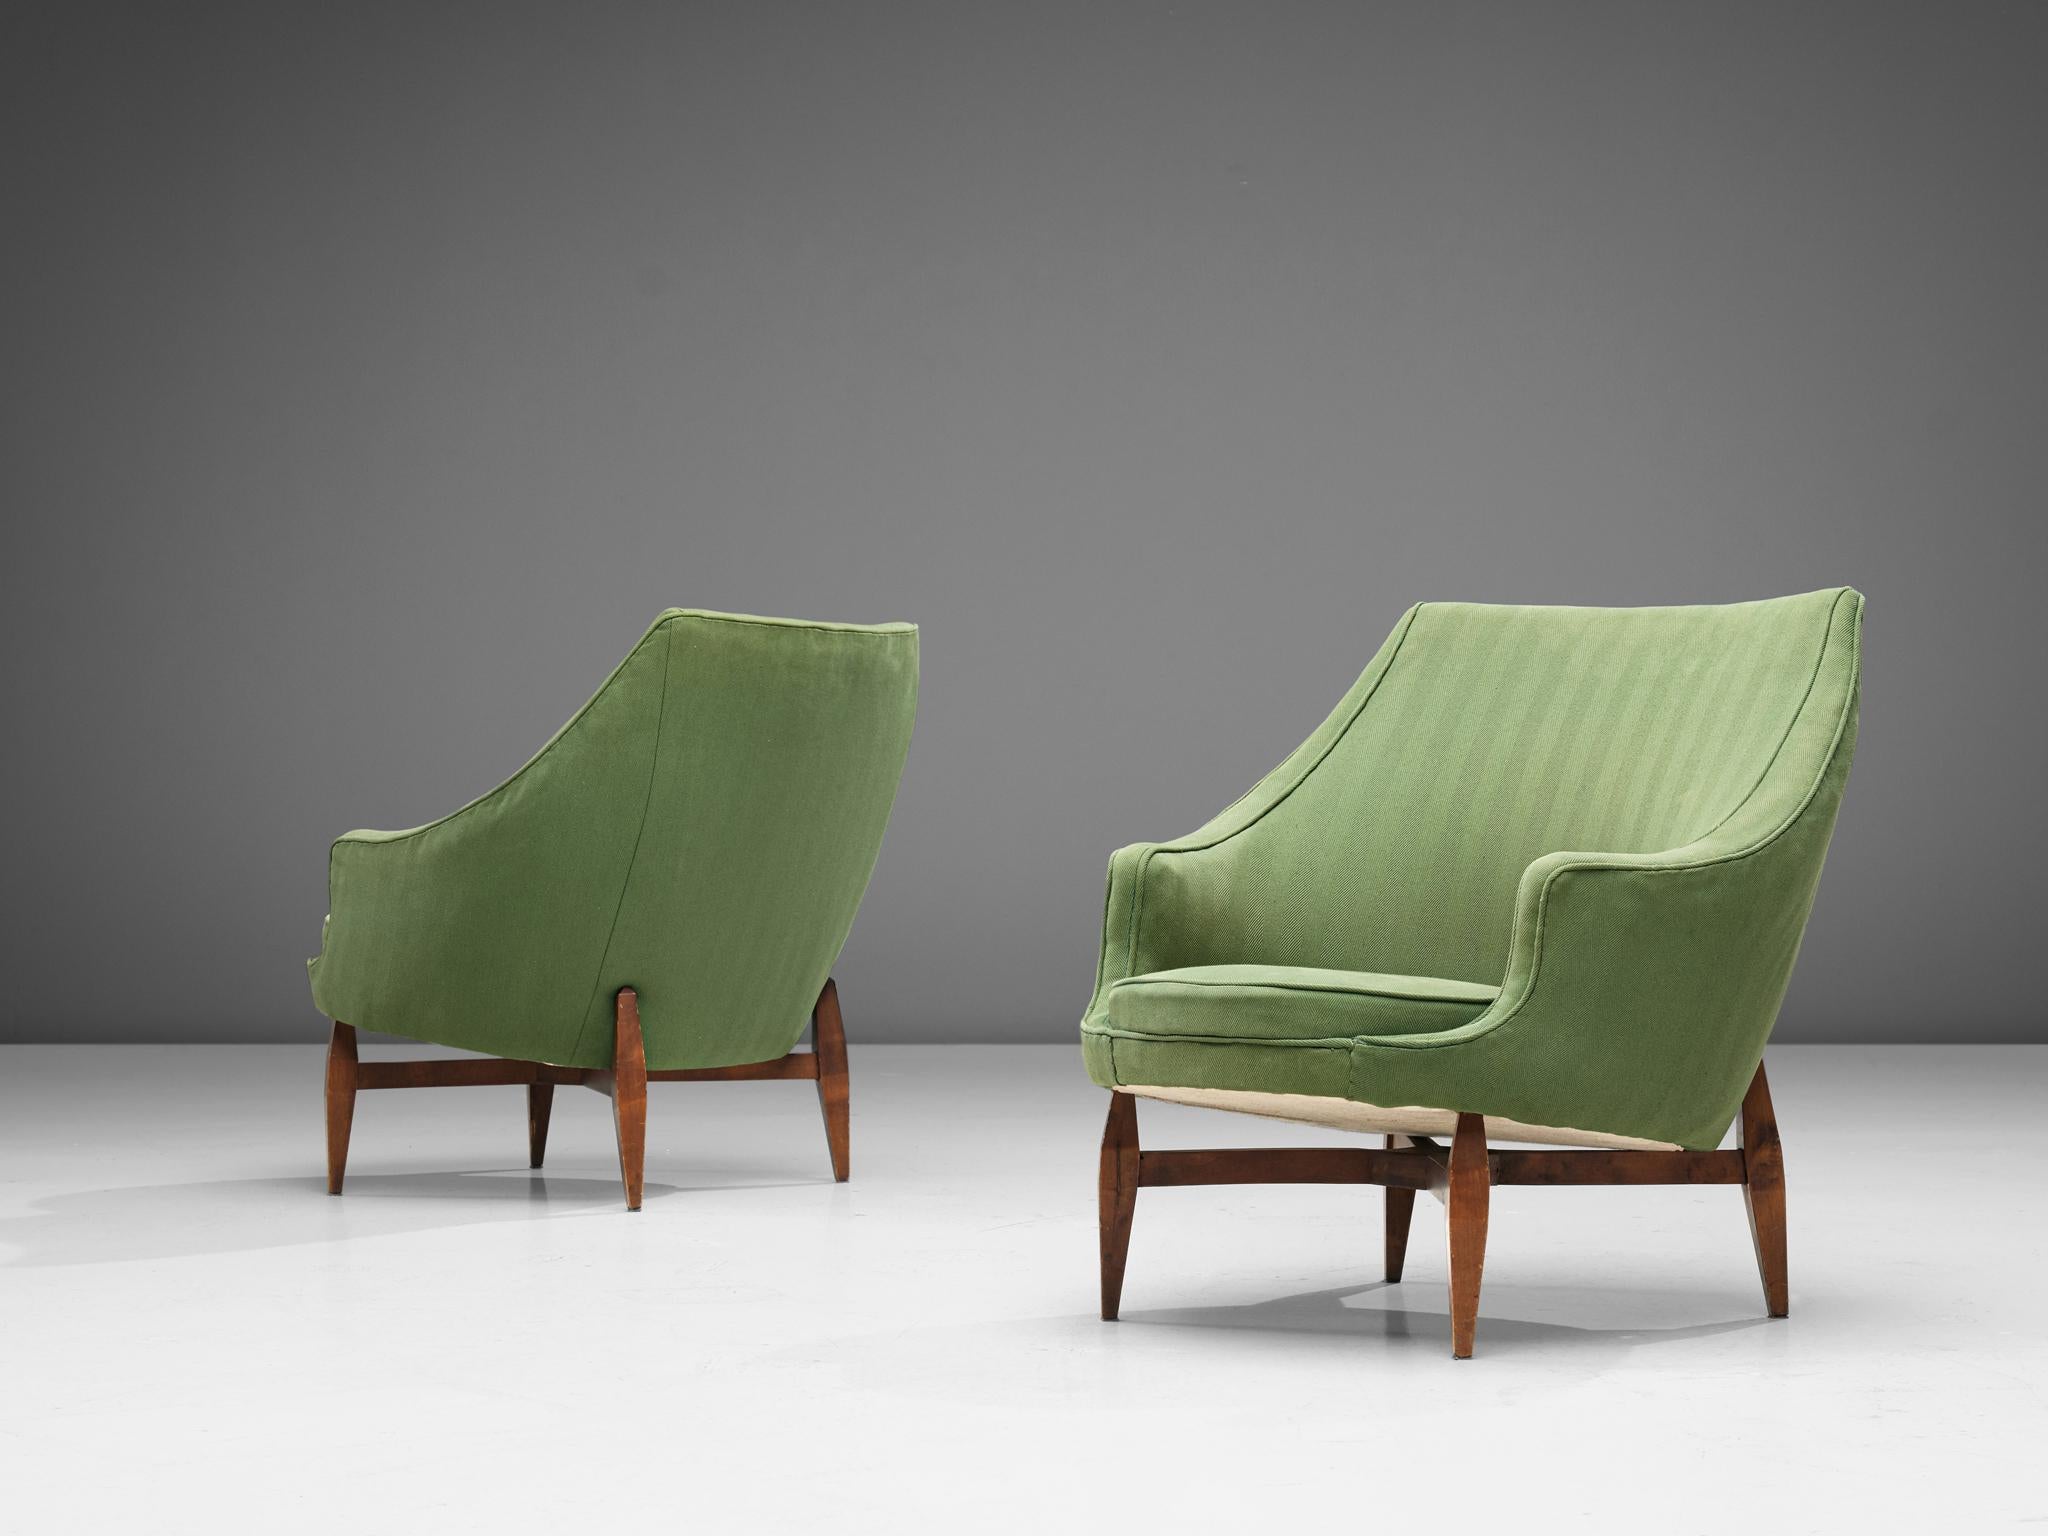 Paar Loungesessel, Stoff und Buche, Italien, 1950er Jahre

Ein sinnliches Sesselpaar mit einer skulpturalen Rückenlehne mit kurzen Armlehnen und einer runden Sitzfläche. Die konisch zulaufenden Holzbeine verleihen den Stühlen einen luftigen Touch